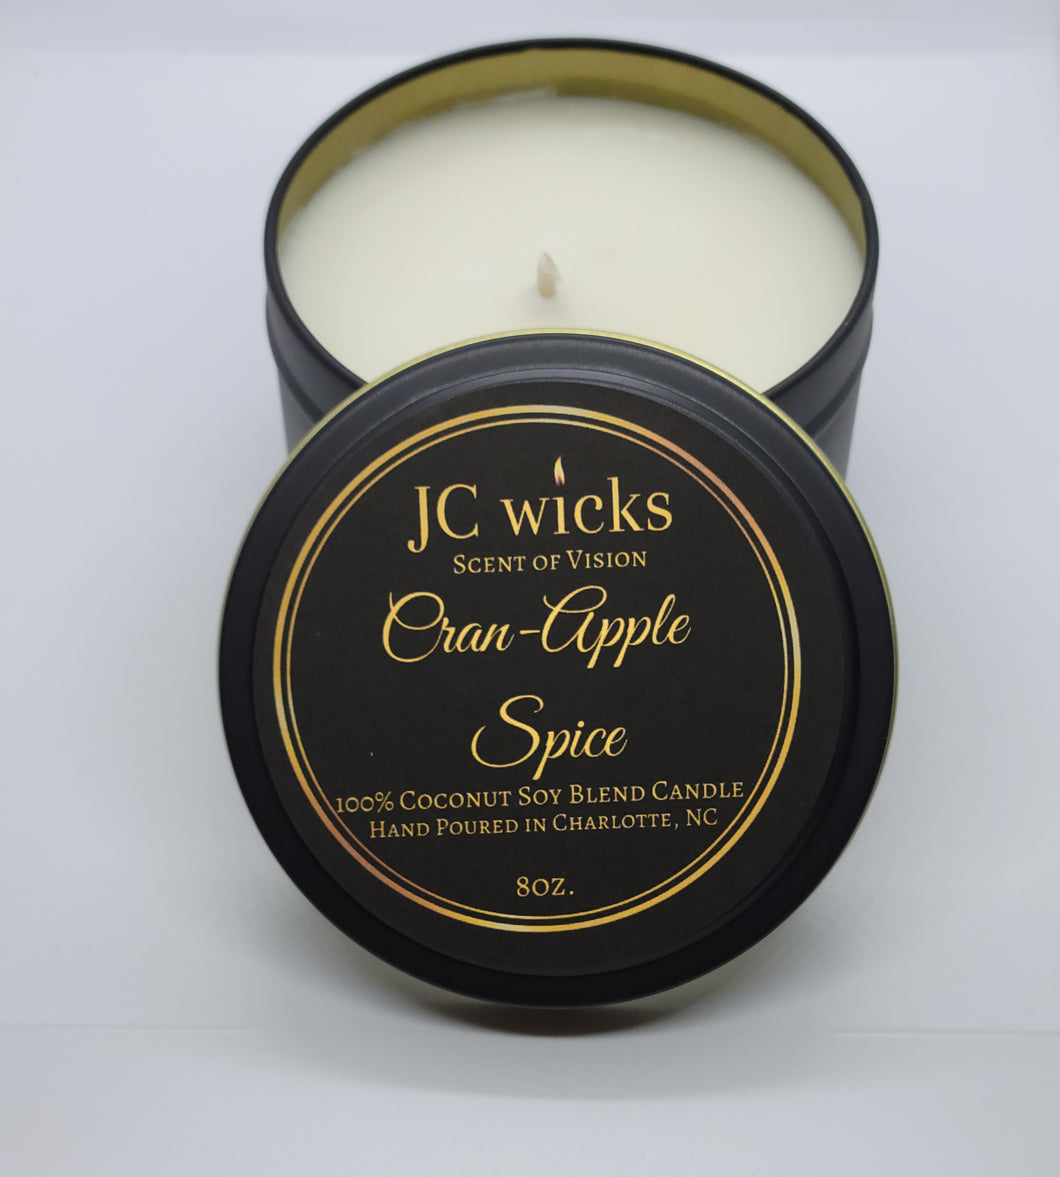 Cran-Apple Spice